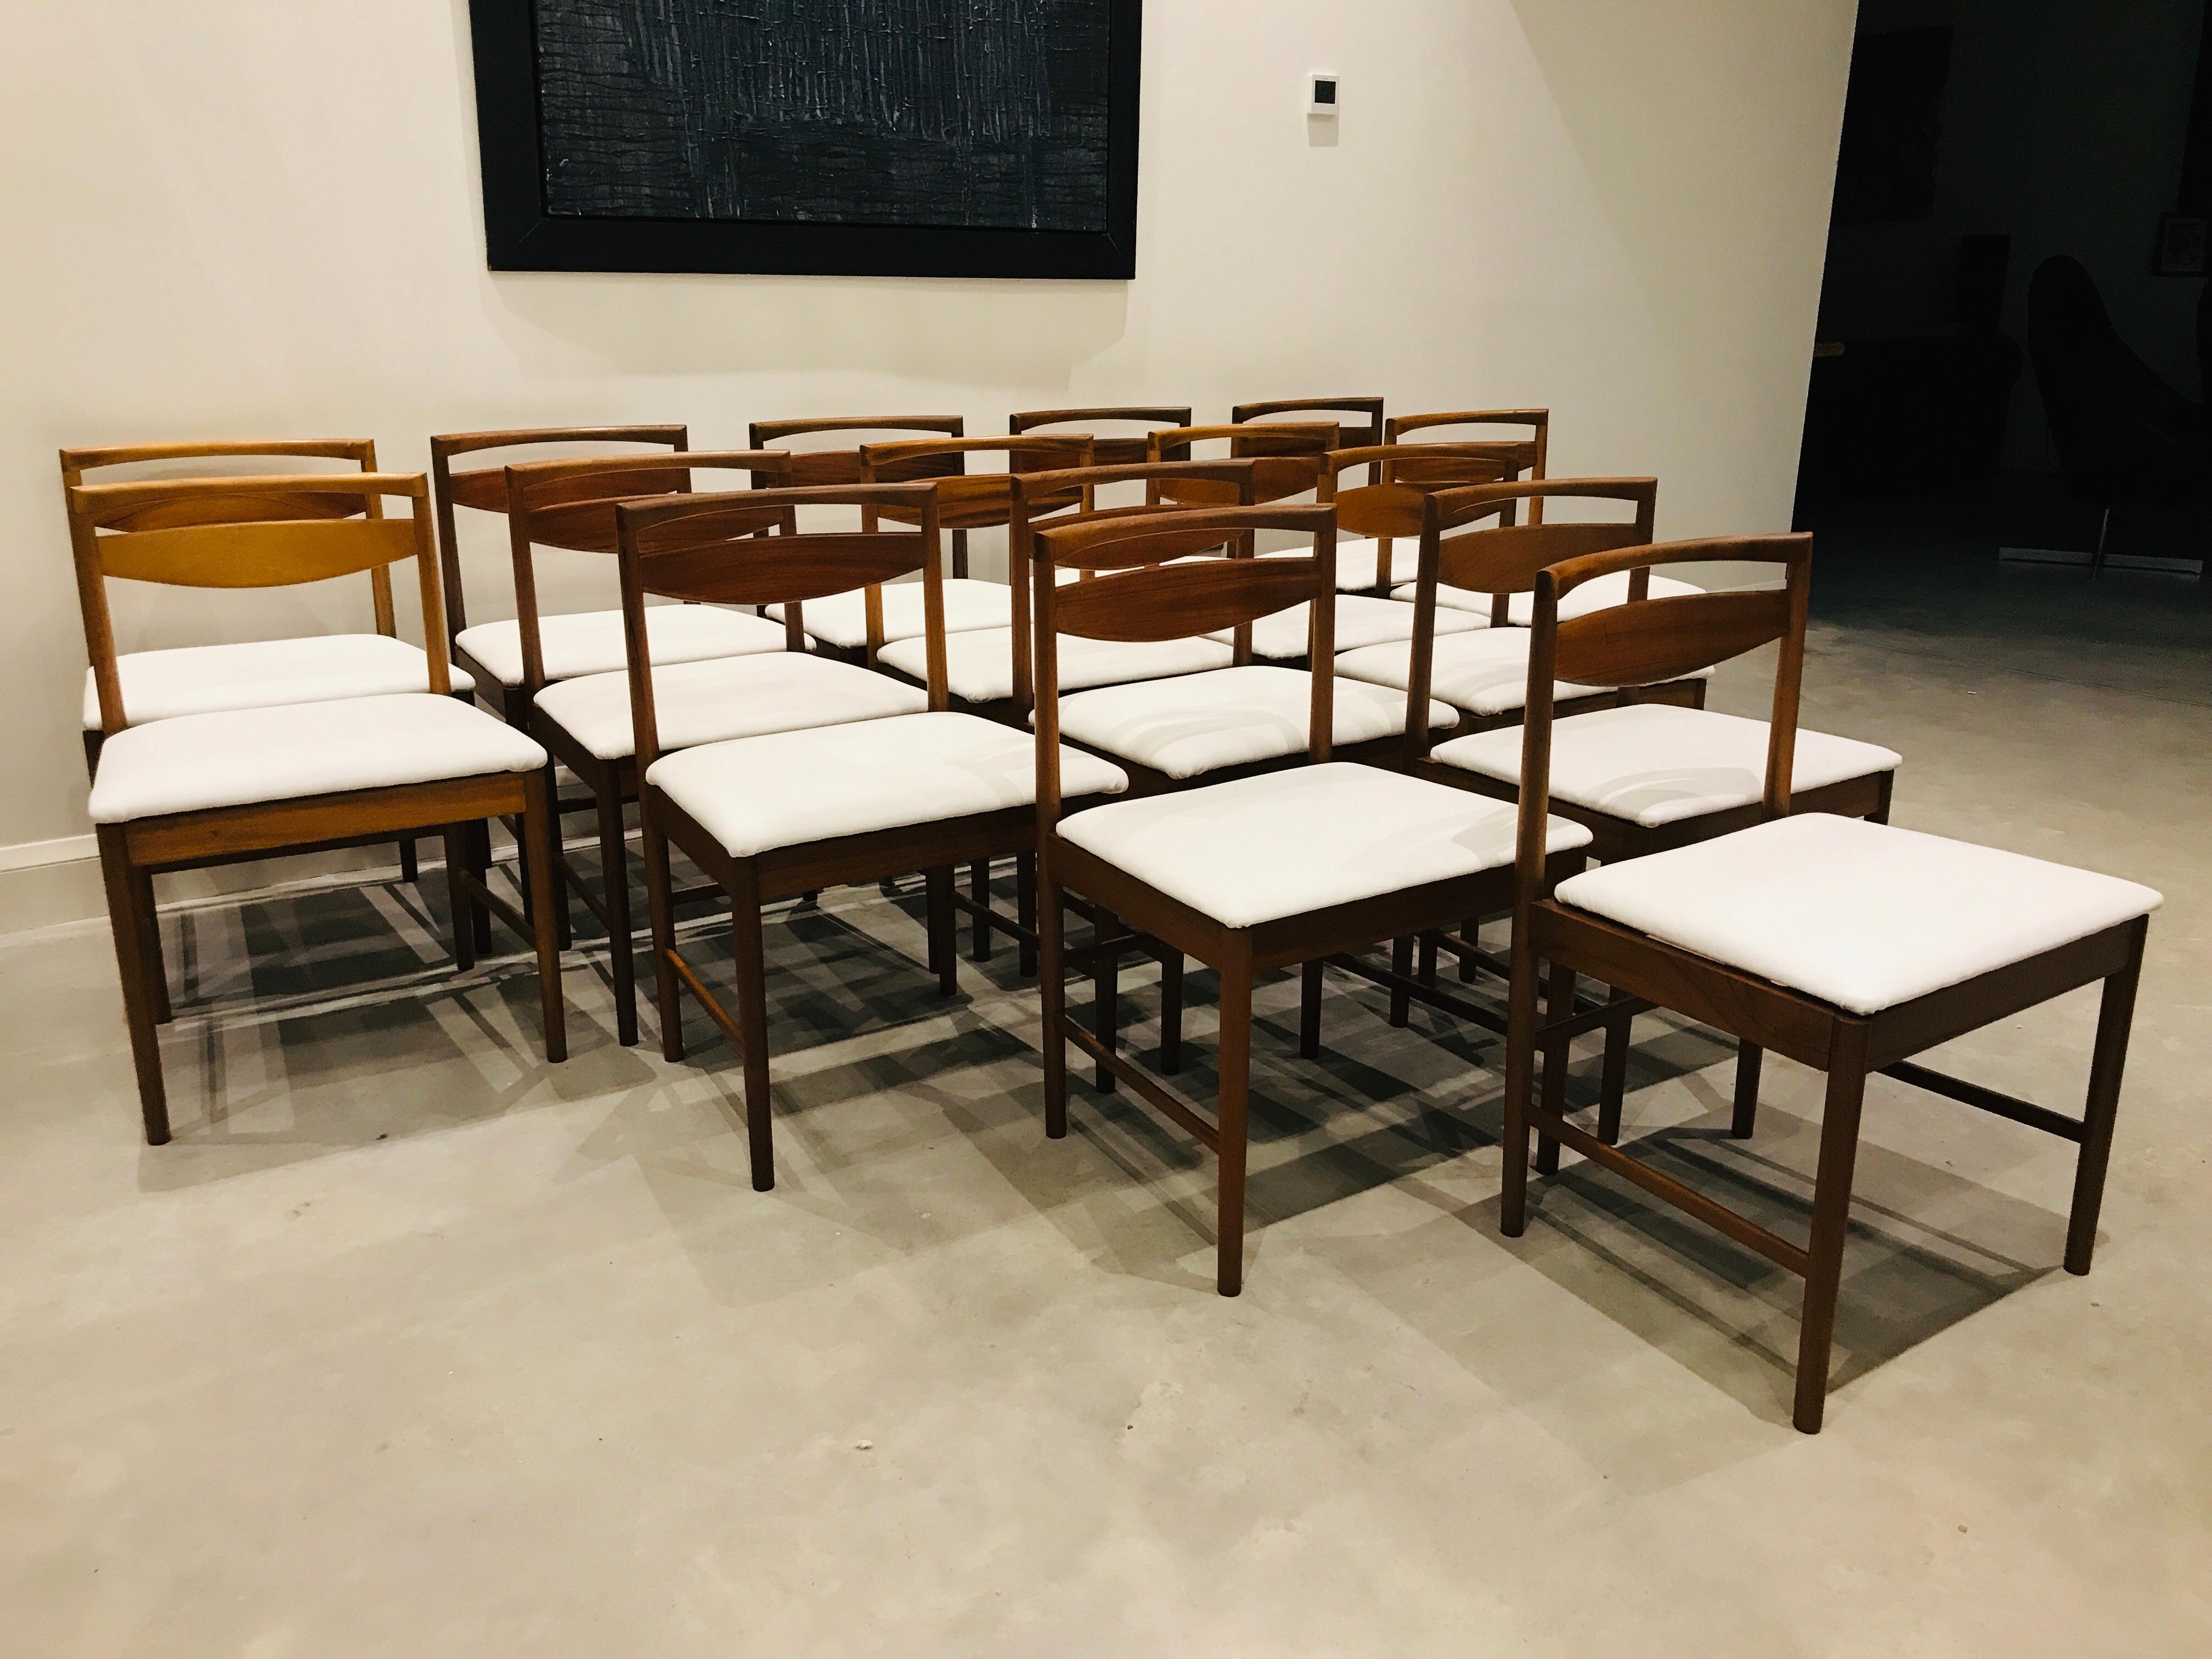 McIntosh Teakholz 

Atemberaubende Reihe von Stühlen, McIntosh gemacht und entworfen Stühle, einer der besten Zeit Möbelhersteller aus den 1960er Jahren!! die Stühle sind in einem schönen weißen Leder gepolstert. Wir haben derzeit 8 Stühle